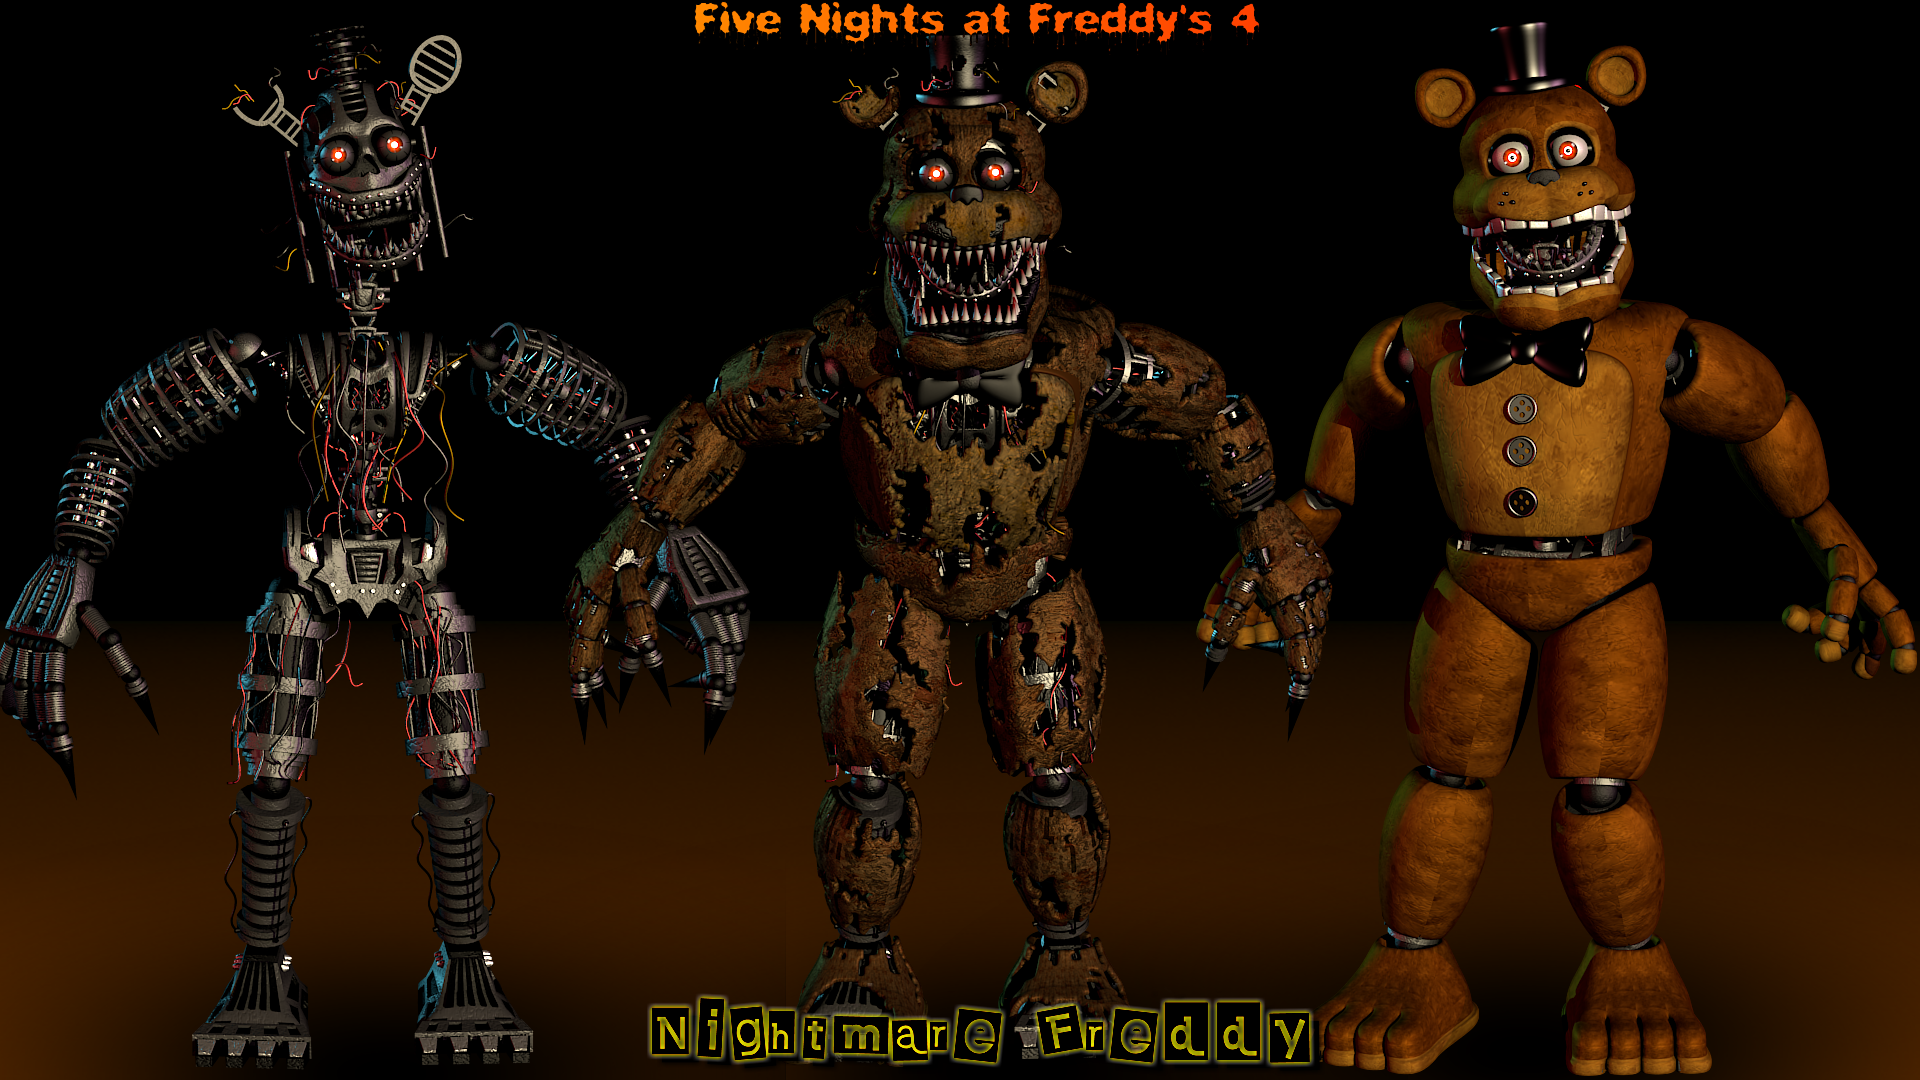 Blender/FNAF] FNAF 1 Freddy Teaser Extended by RazvanAndrei123 on DeviantArt